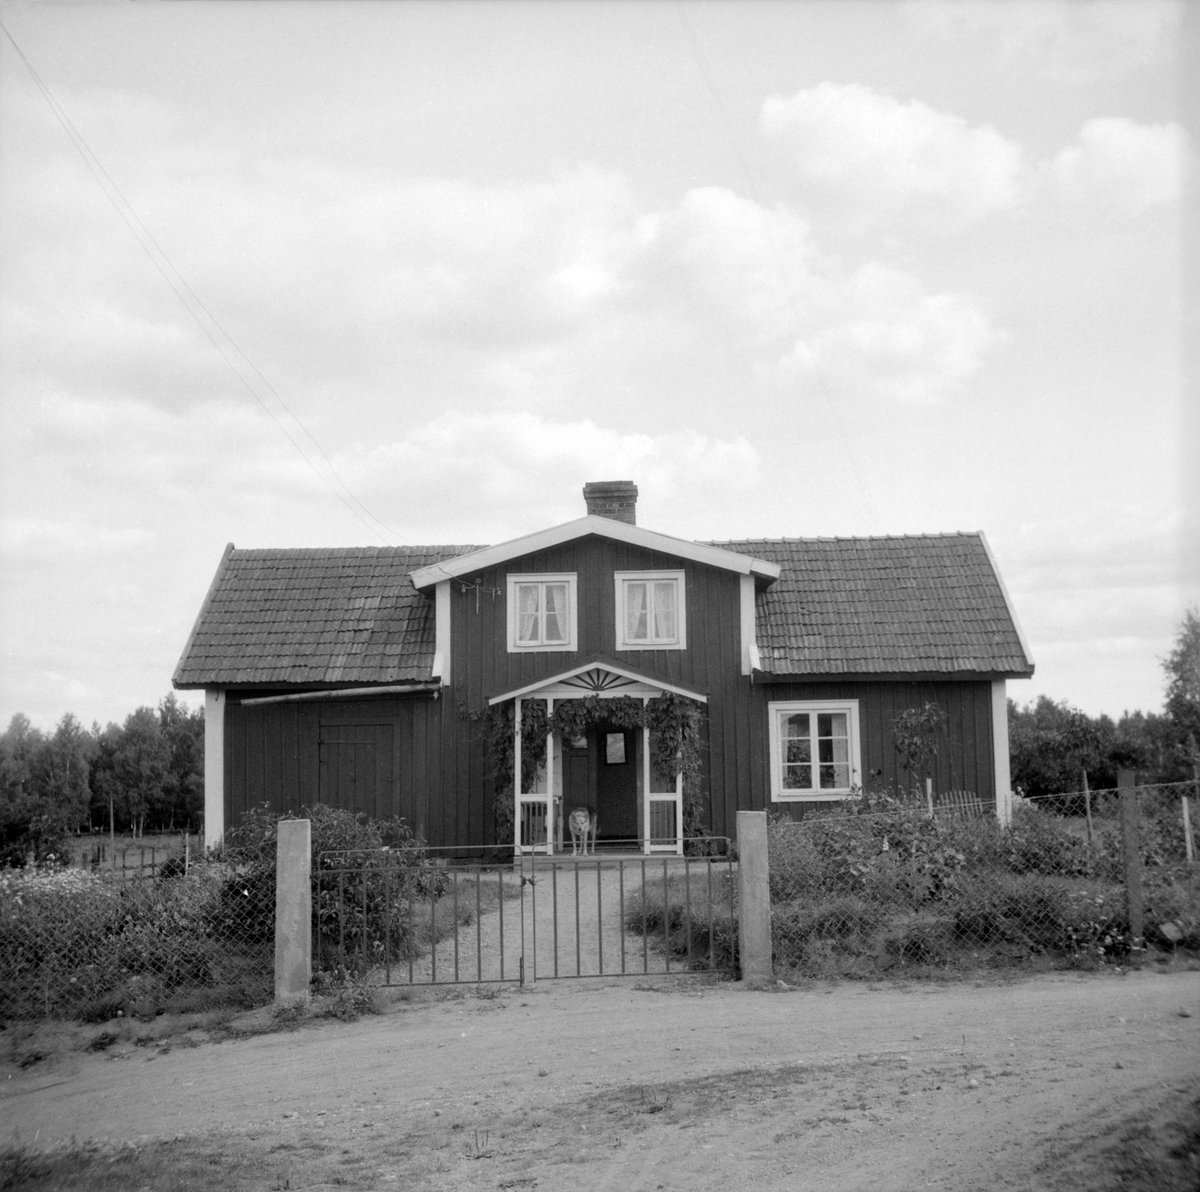 Vy mot Ullevi Mellangård (Olofstorp) i Järstad.